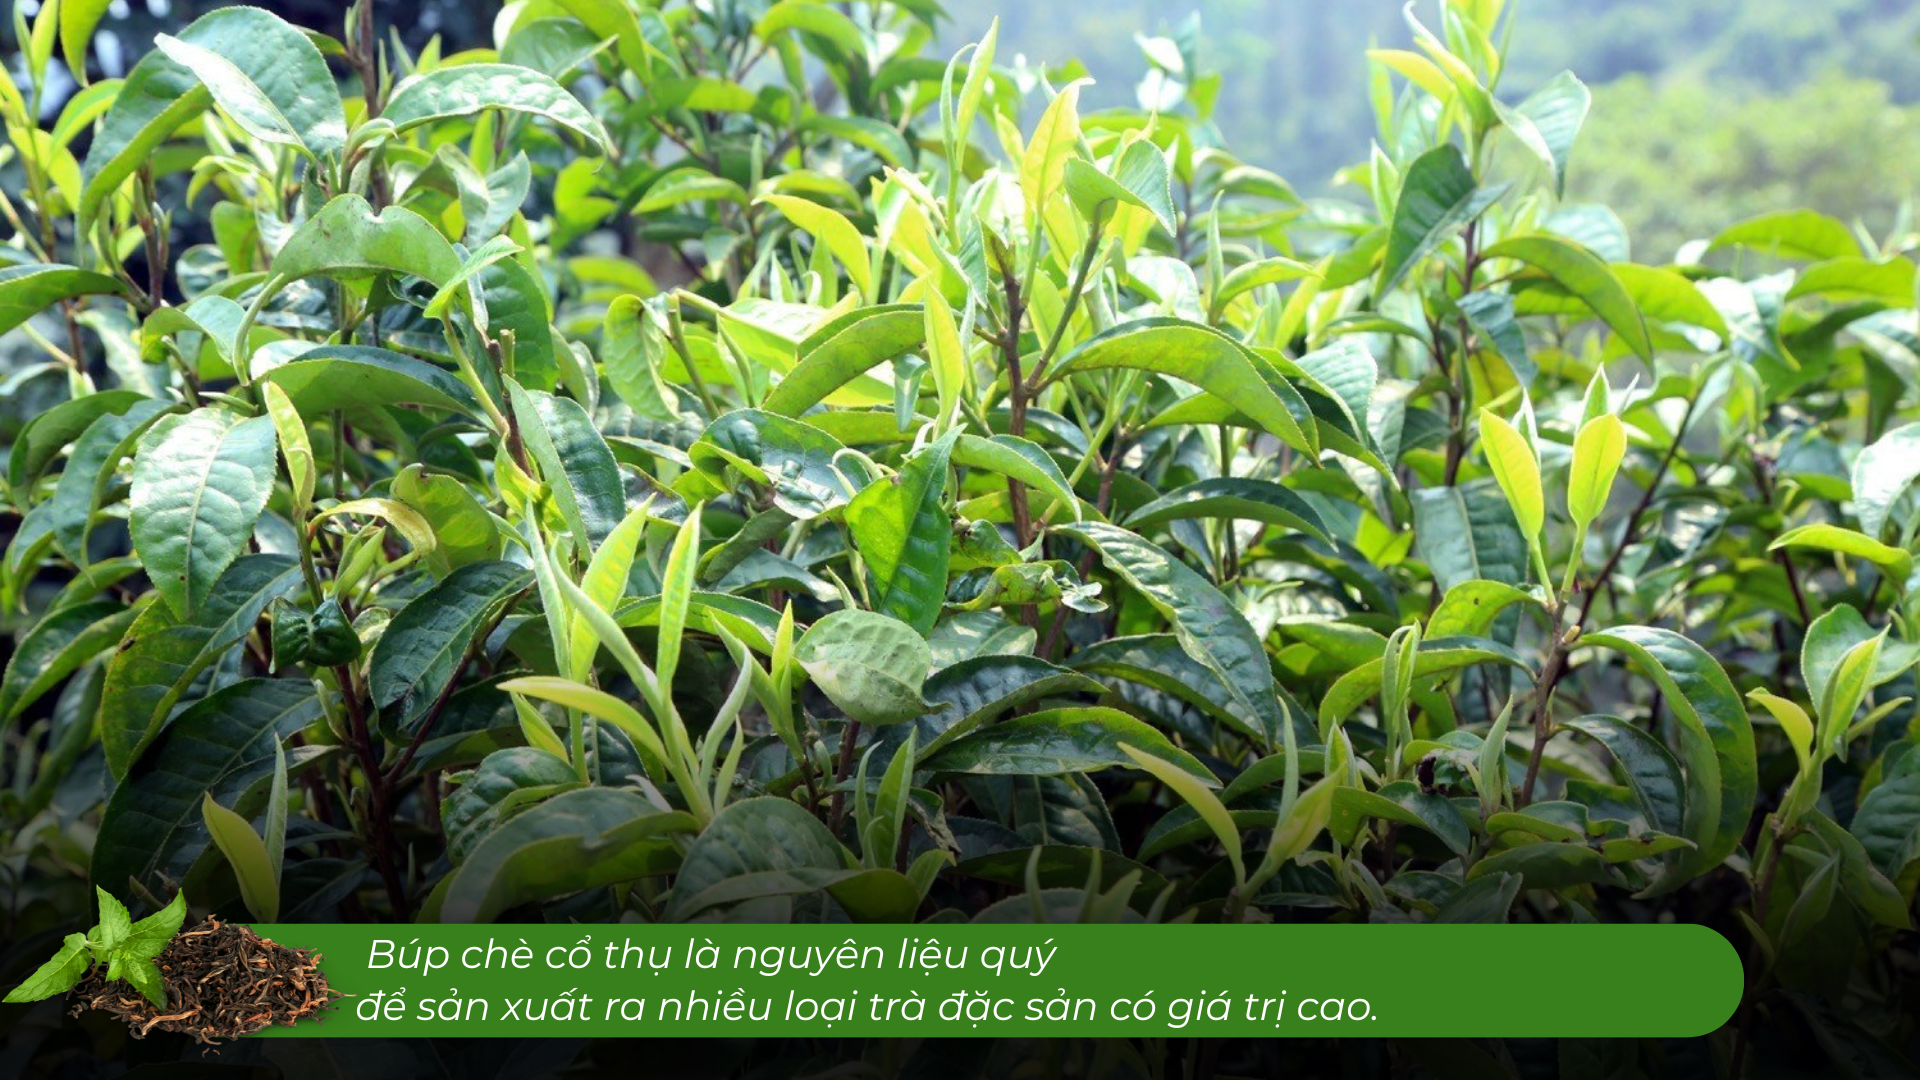 Lào Cai có một 'kho vàng xanh', mùi thơm như mật ong, hễ bán là hết sạch, giá 1,5 triệu đồng/kg - Ảnh 5.